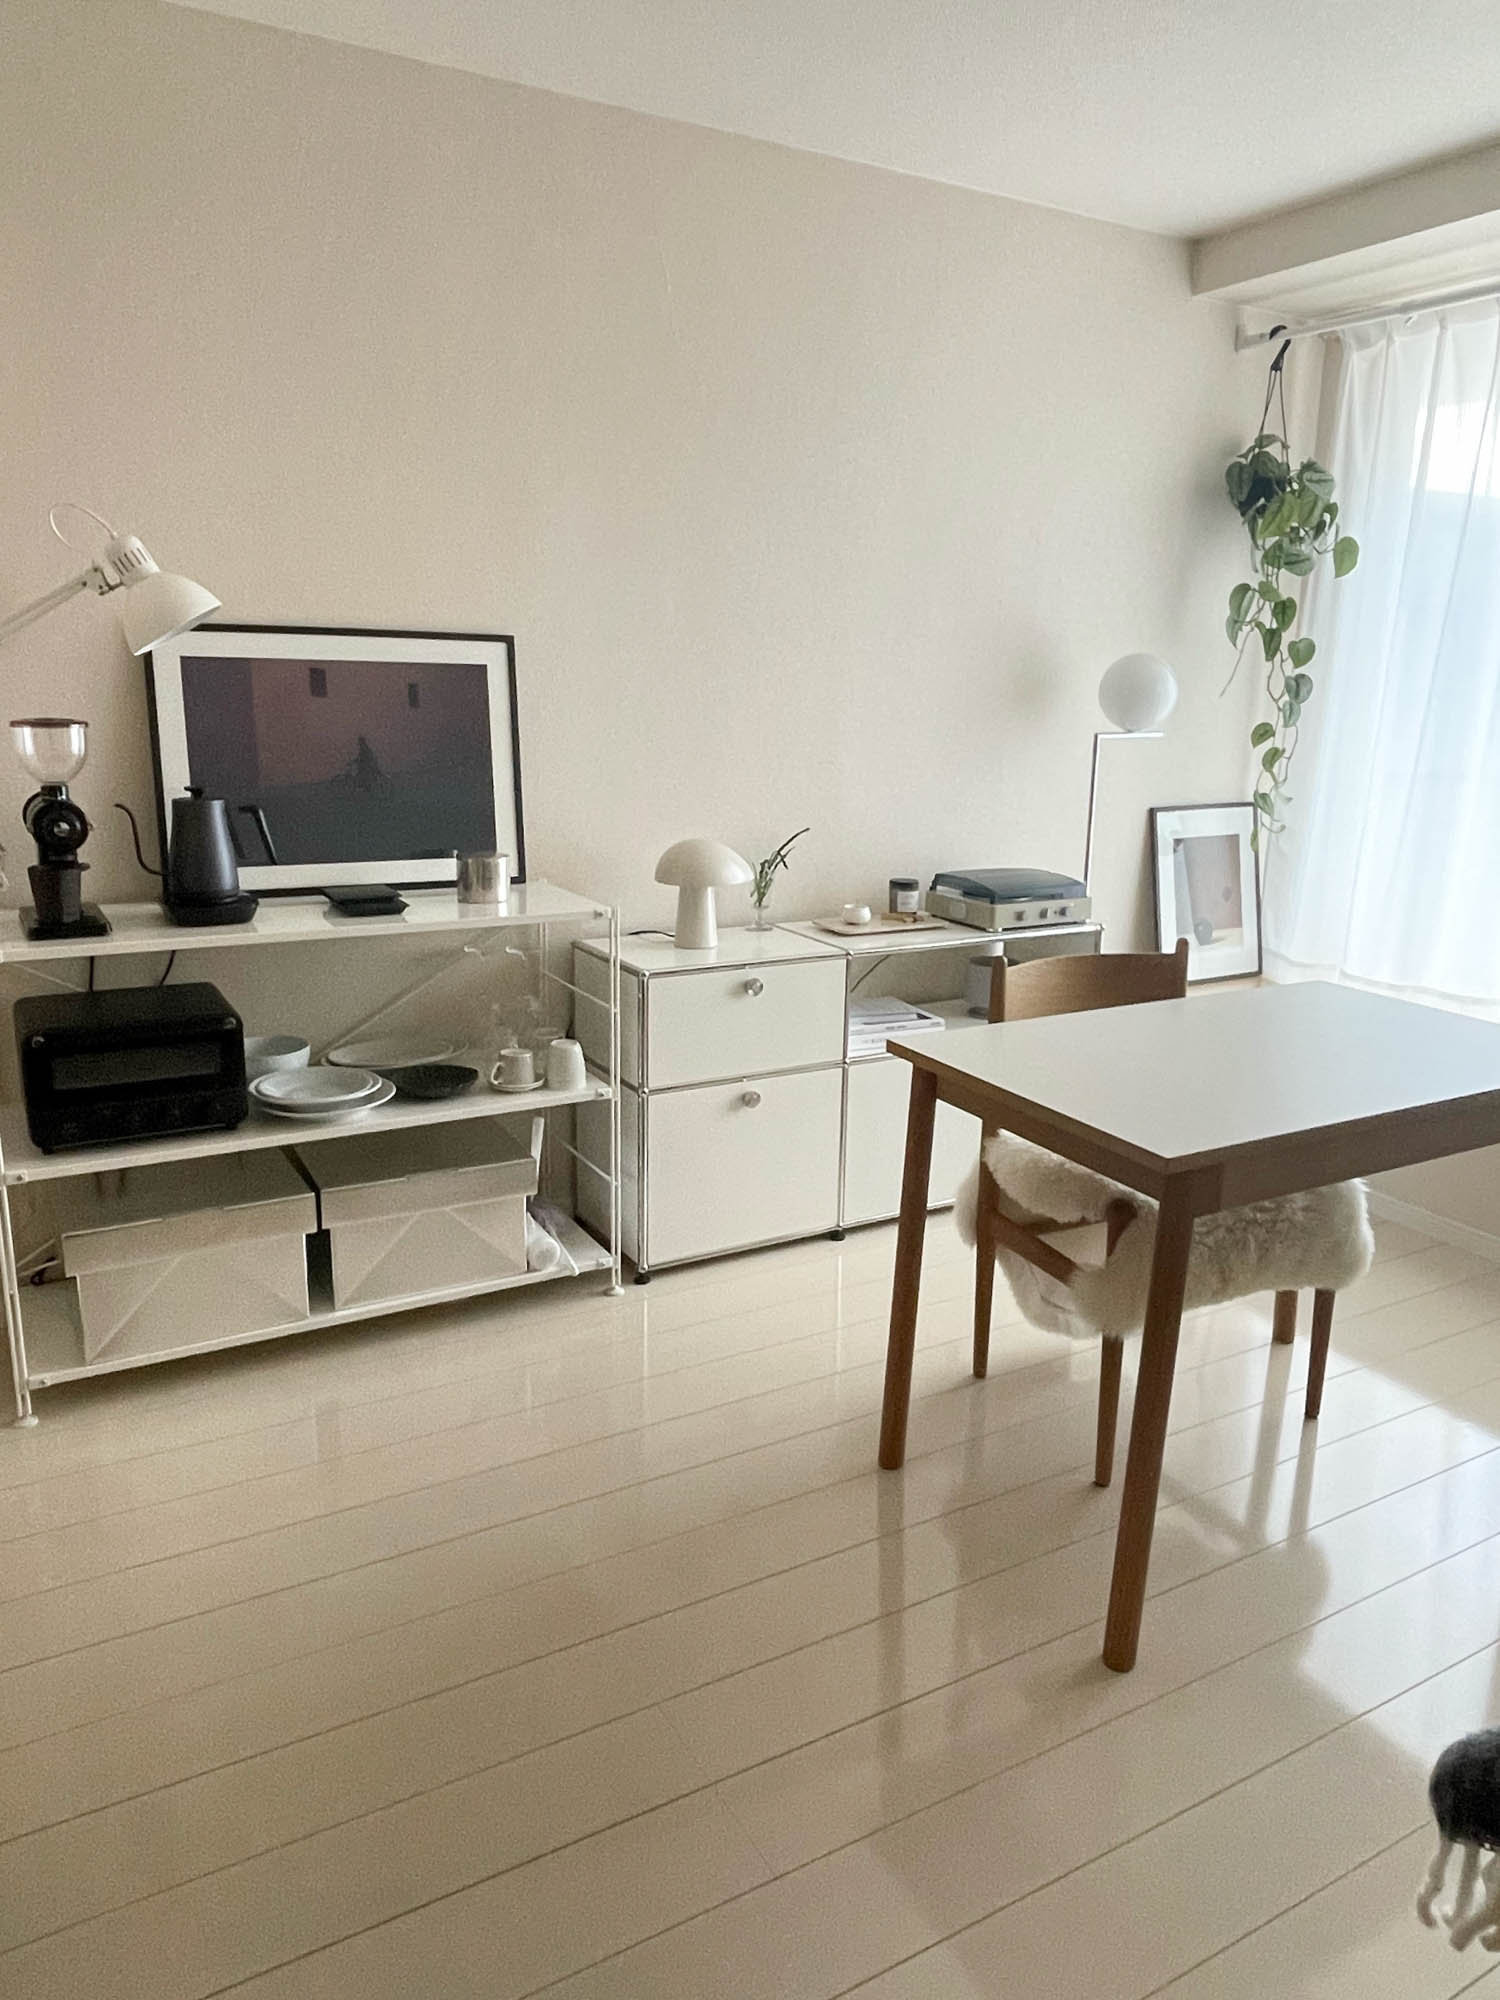 おっしゃる通り、床も壁も全て白で統一されている無機質なお部屋。Tamakiさんがお持ちの白い家具がよく似合います。